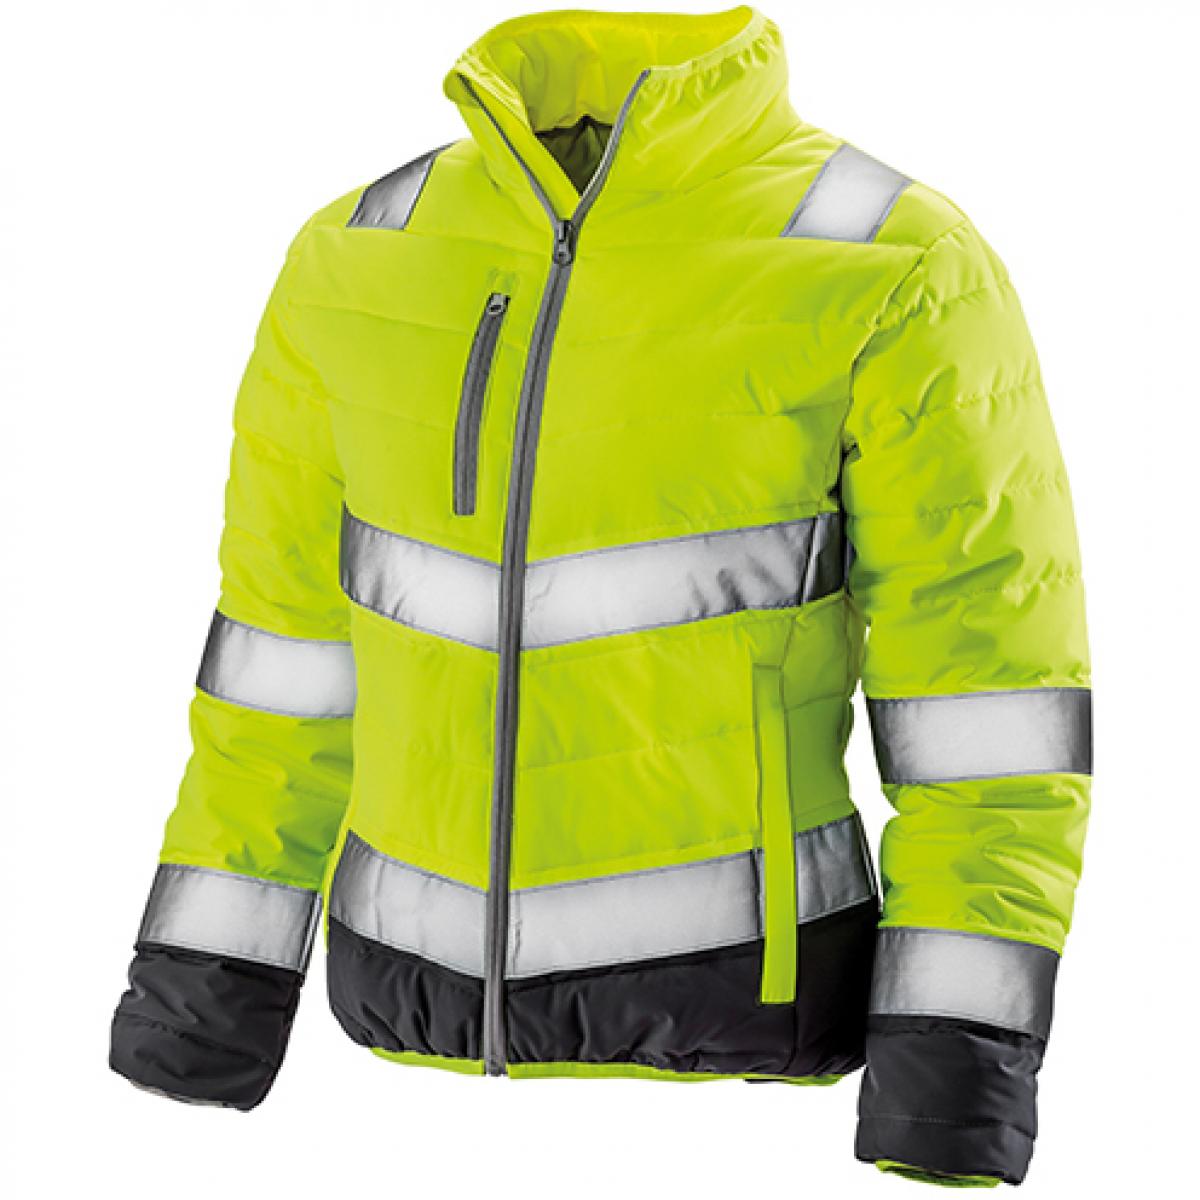 Hersteller: Result Herstellernummer: R325F Artikelbezeichnung: Damen Soft Padded Safety Jacket  ISO EN20471:2013 Klasse 2 Farbe: Fluorescent Yellow/Grey